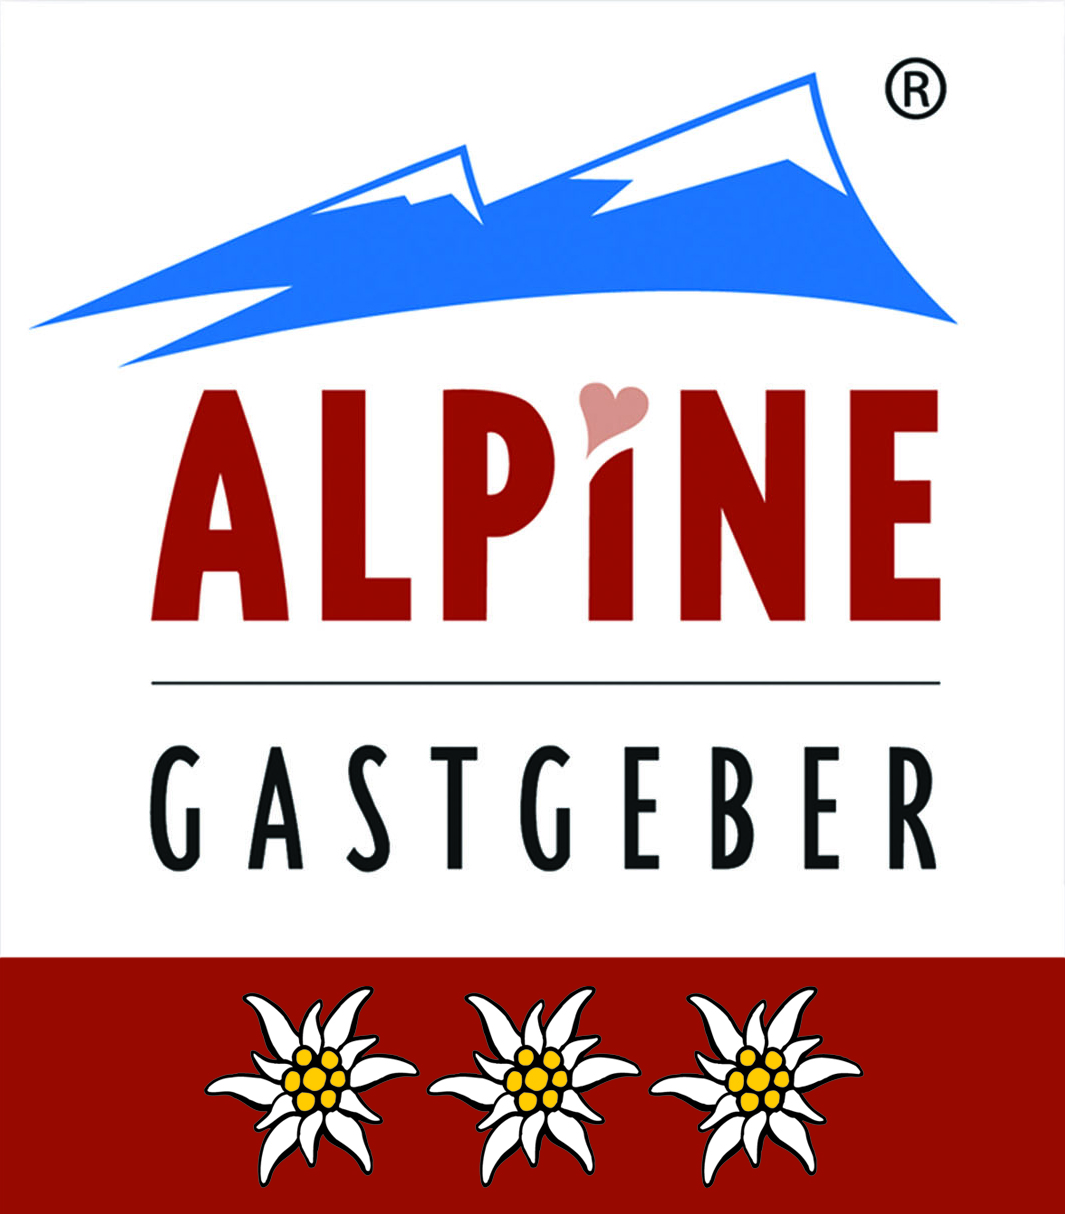 Alpine Gastgeber - Drei Edelweiss